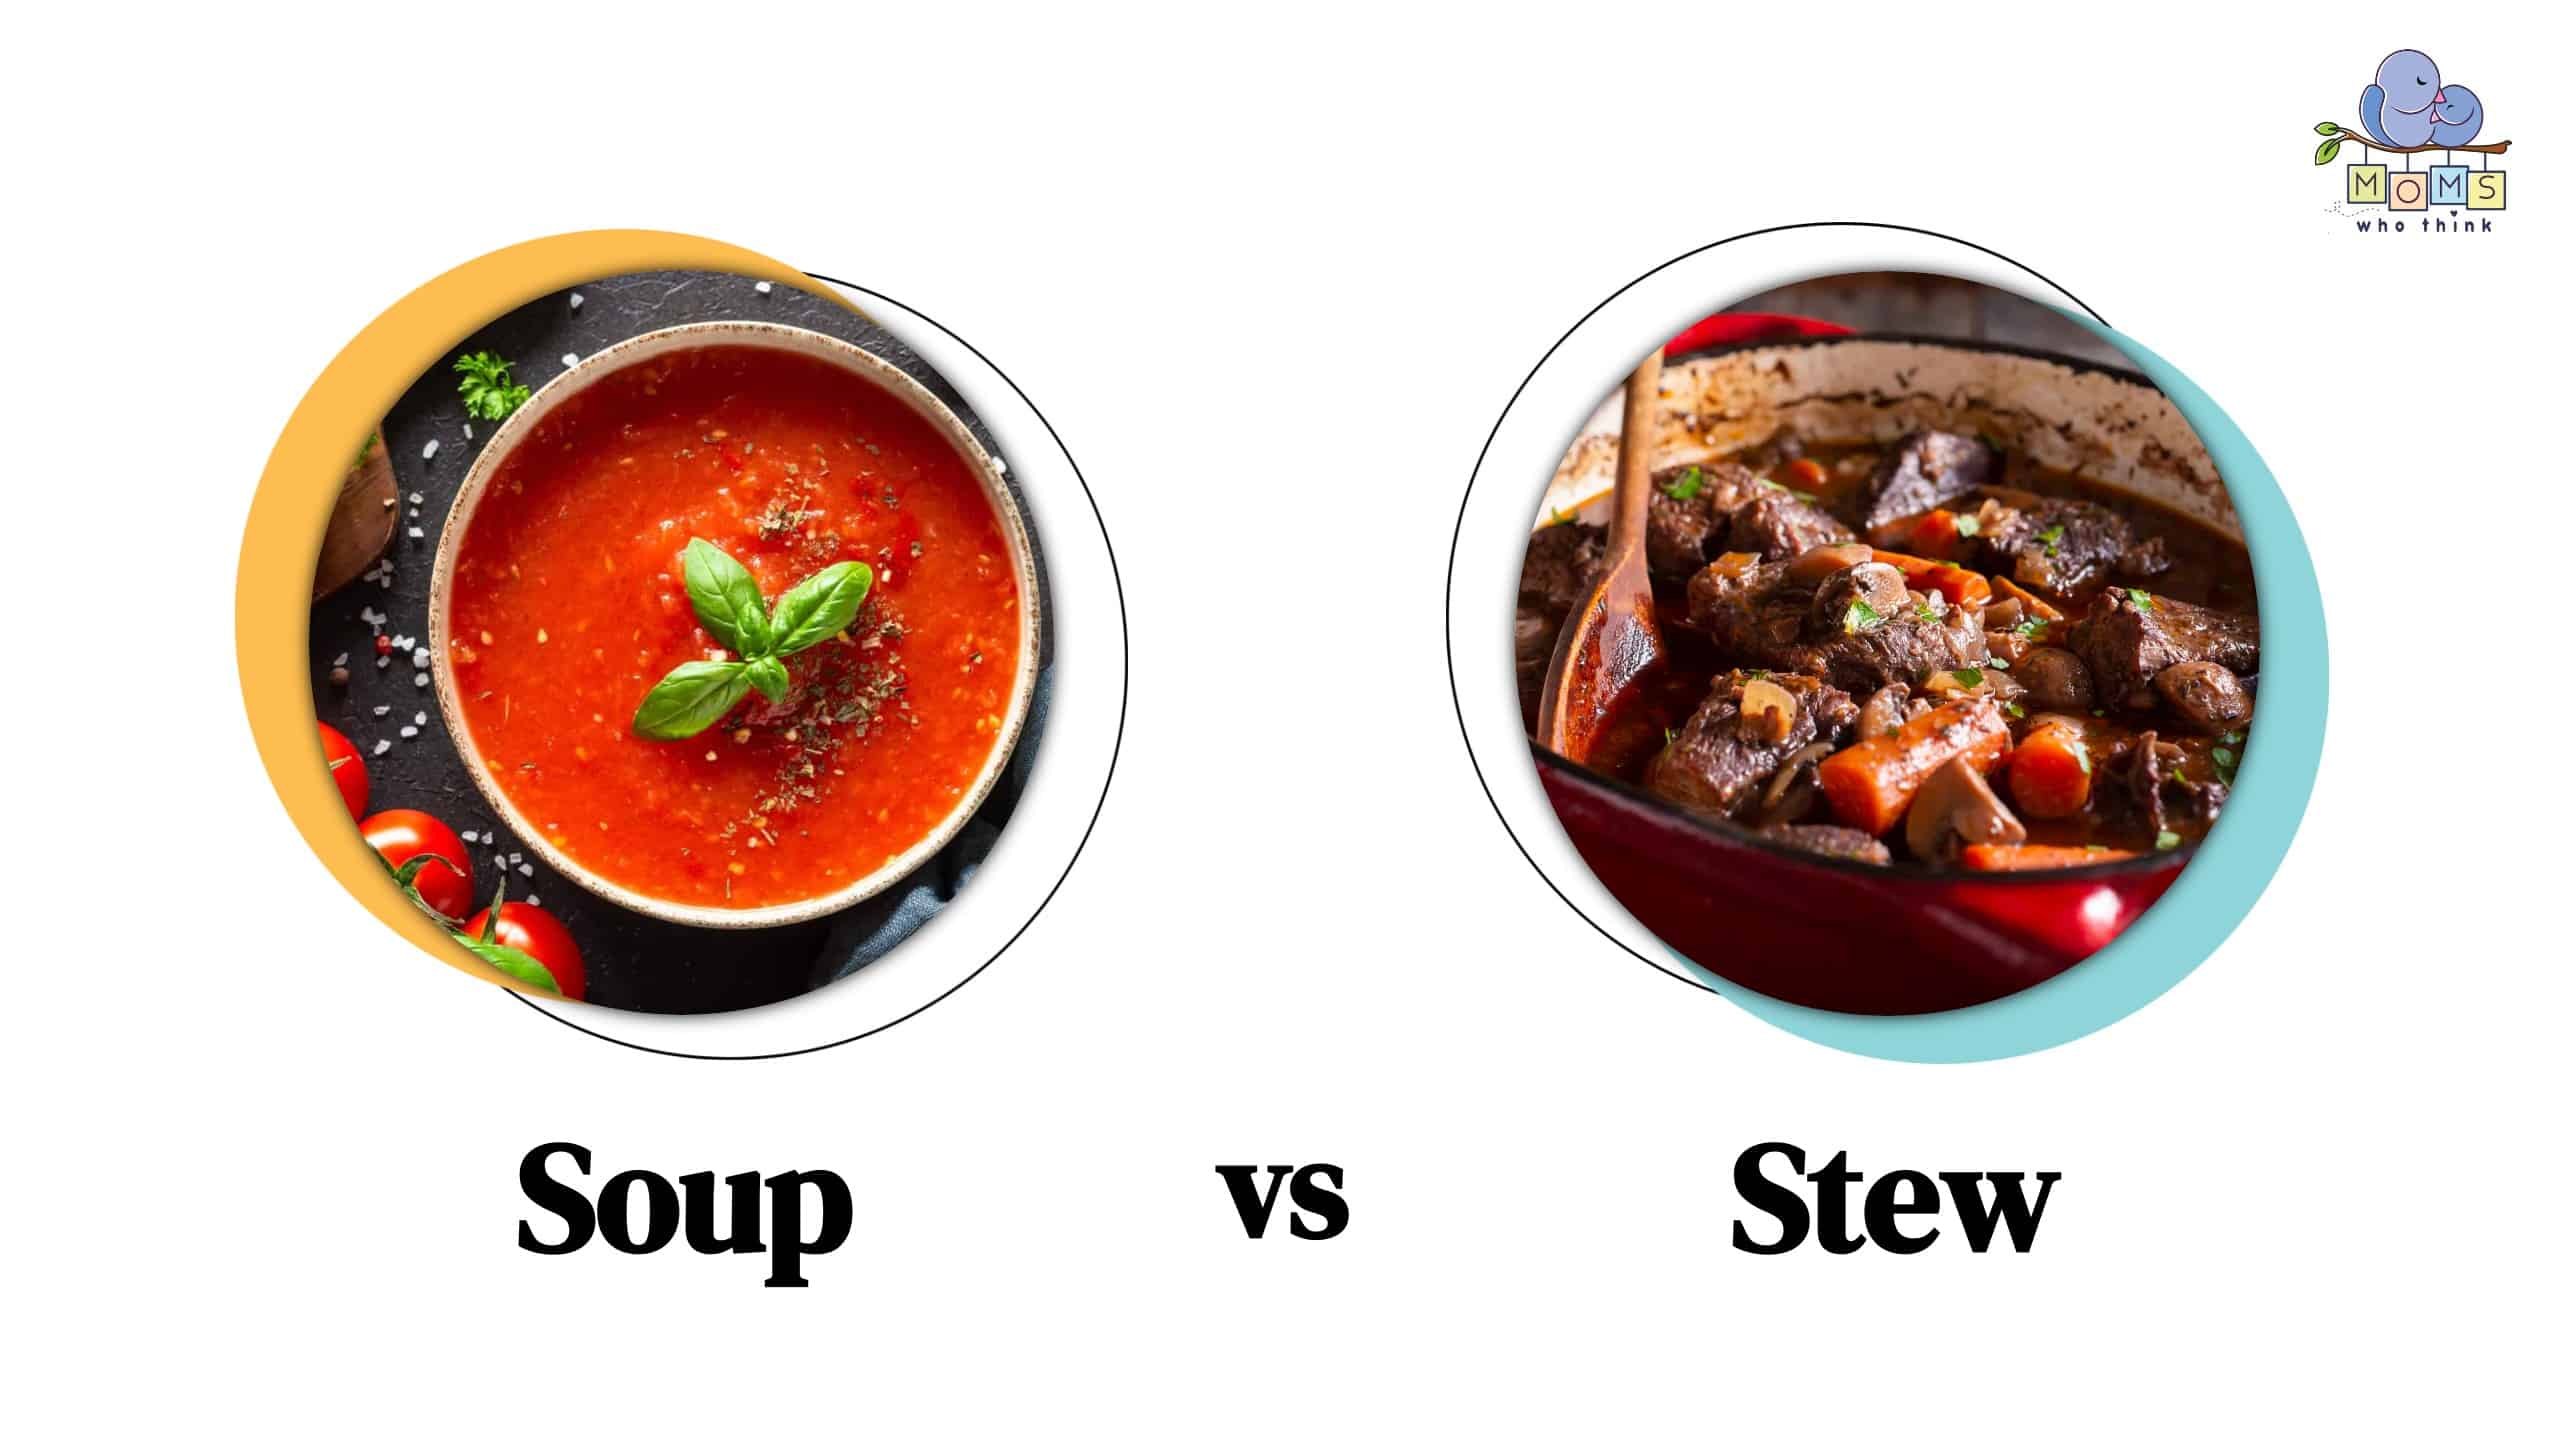 Soup vs Stew